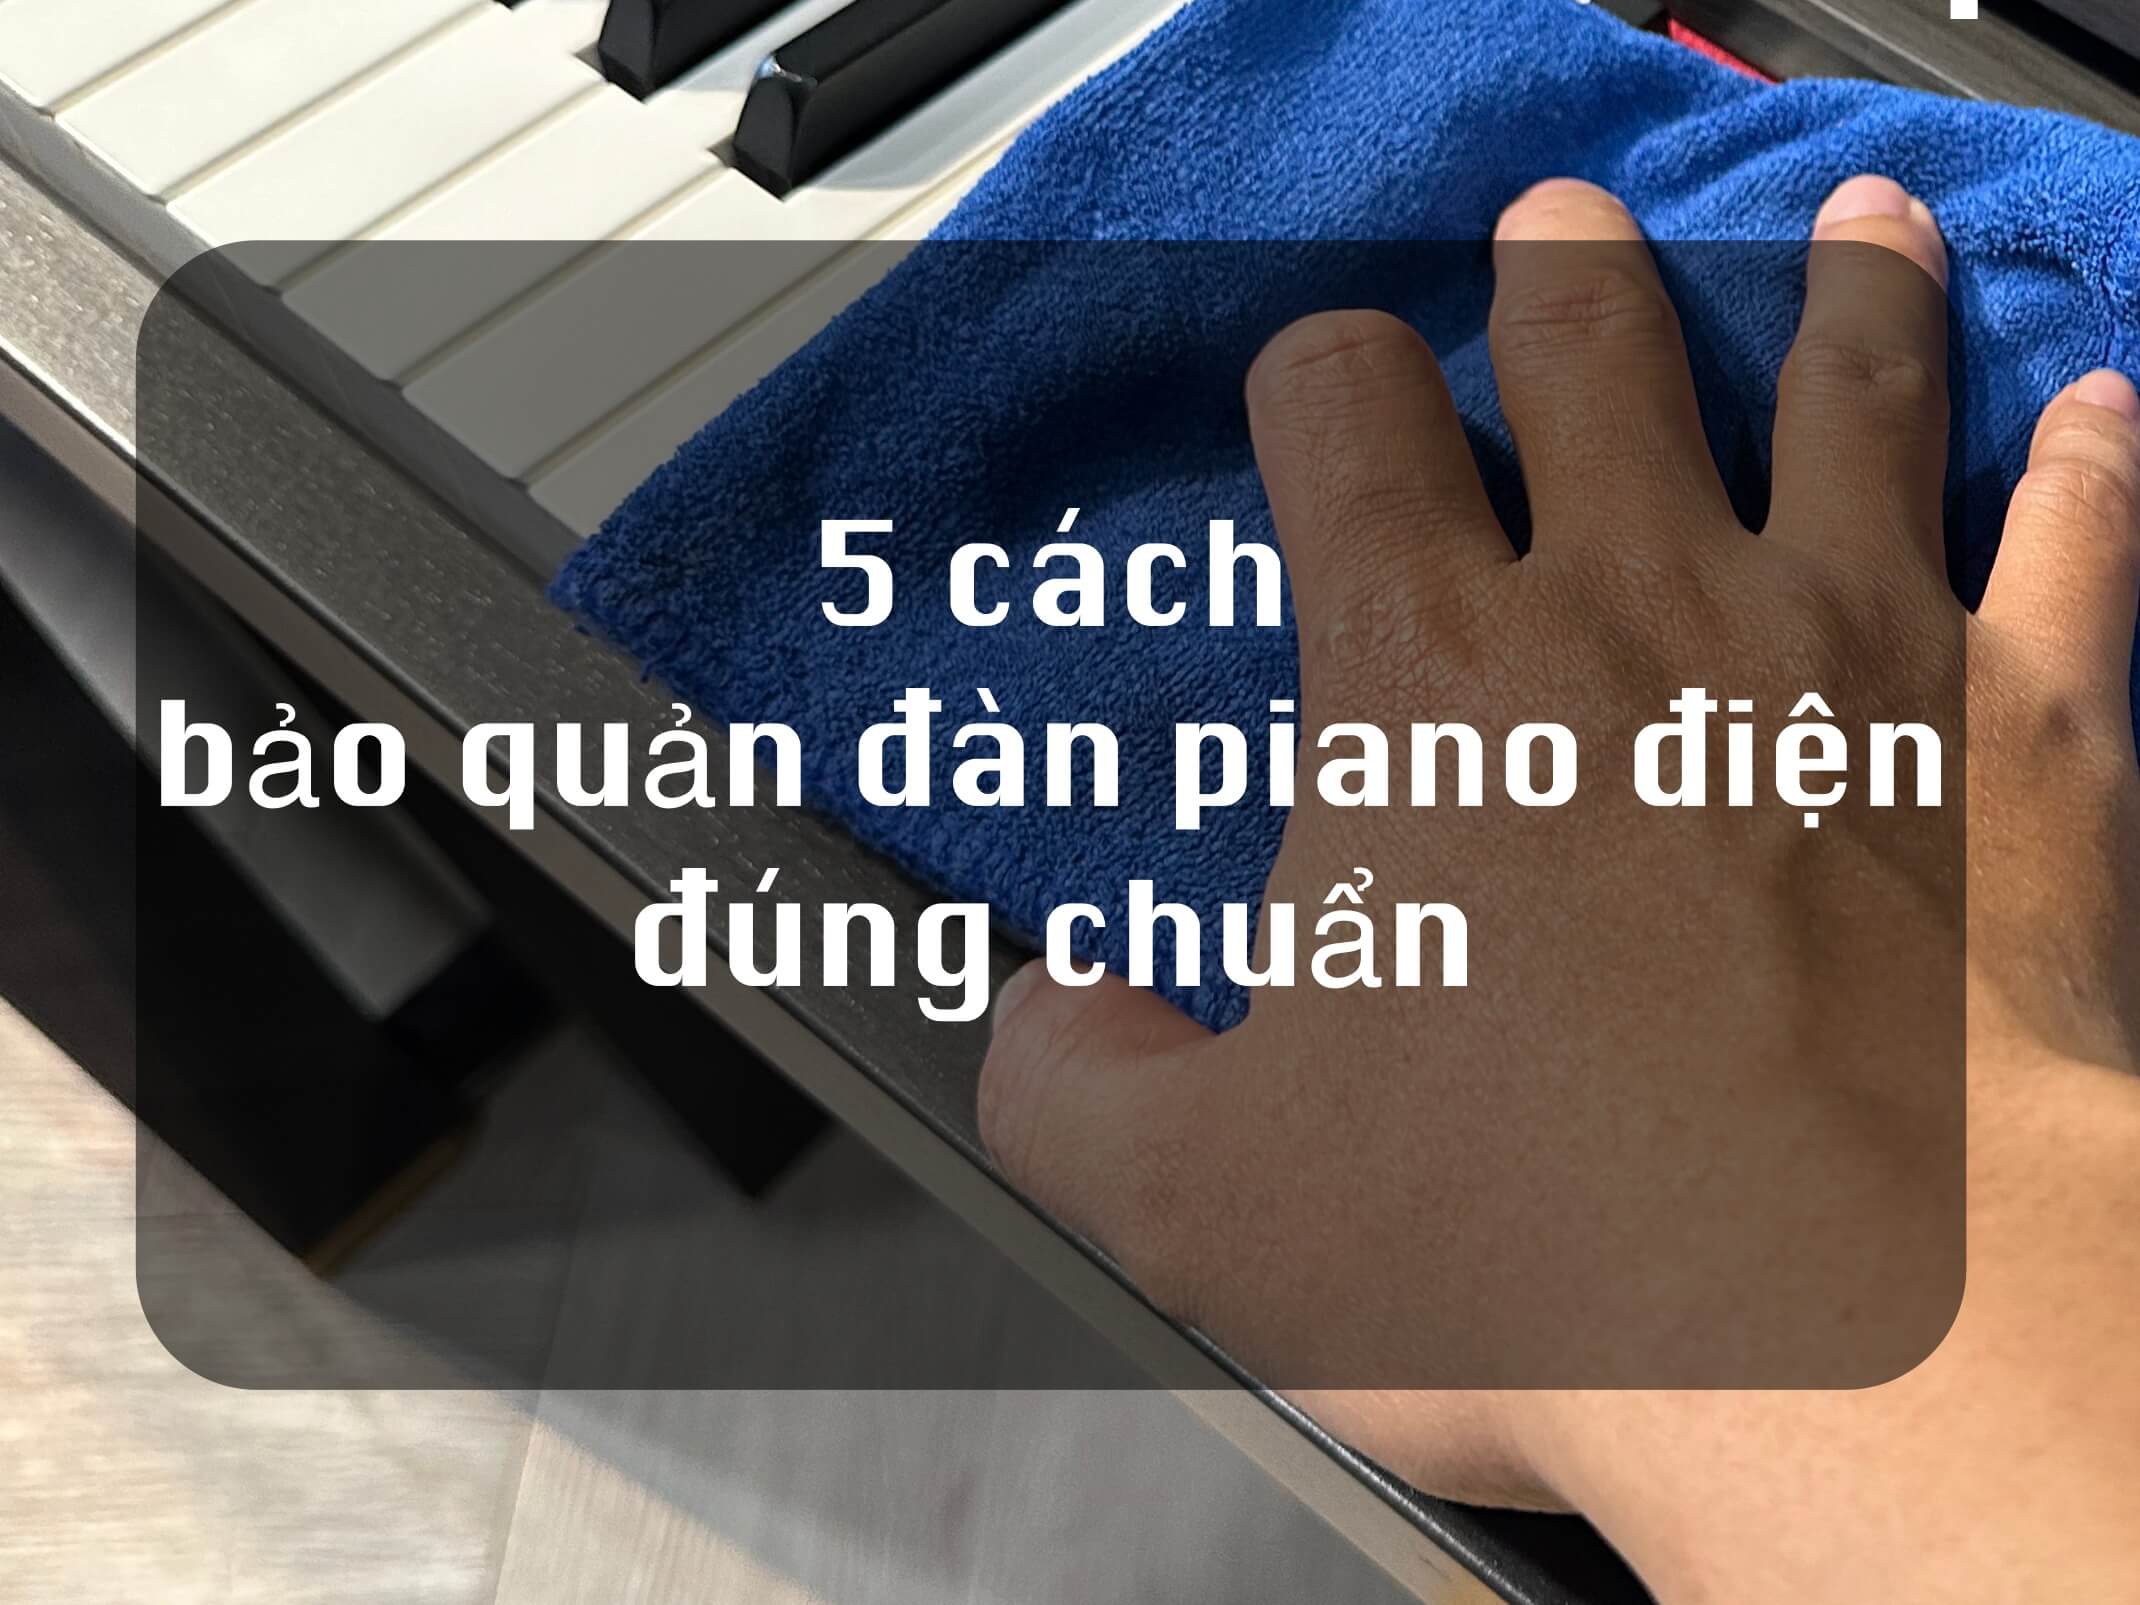 5 CÁCH BẢO QUẢN ĐÀN PIANO ĐIỆN ĐÚNG CHUẨN CỦA NGƯỜI NHẬT